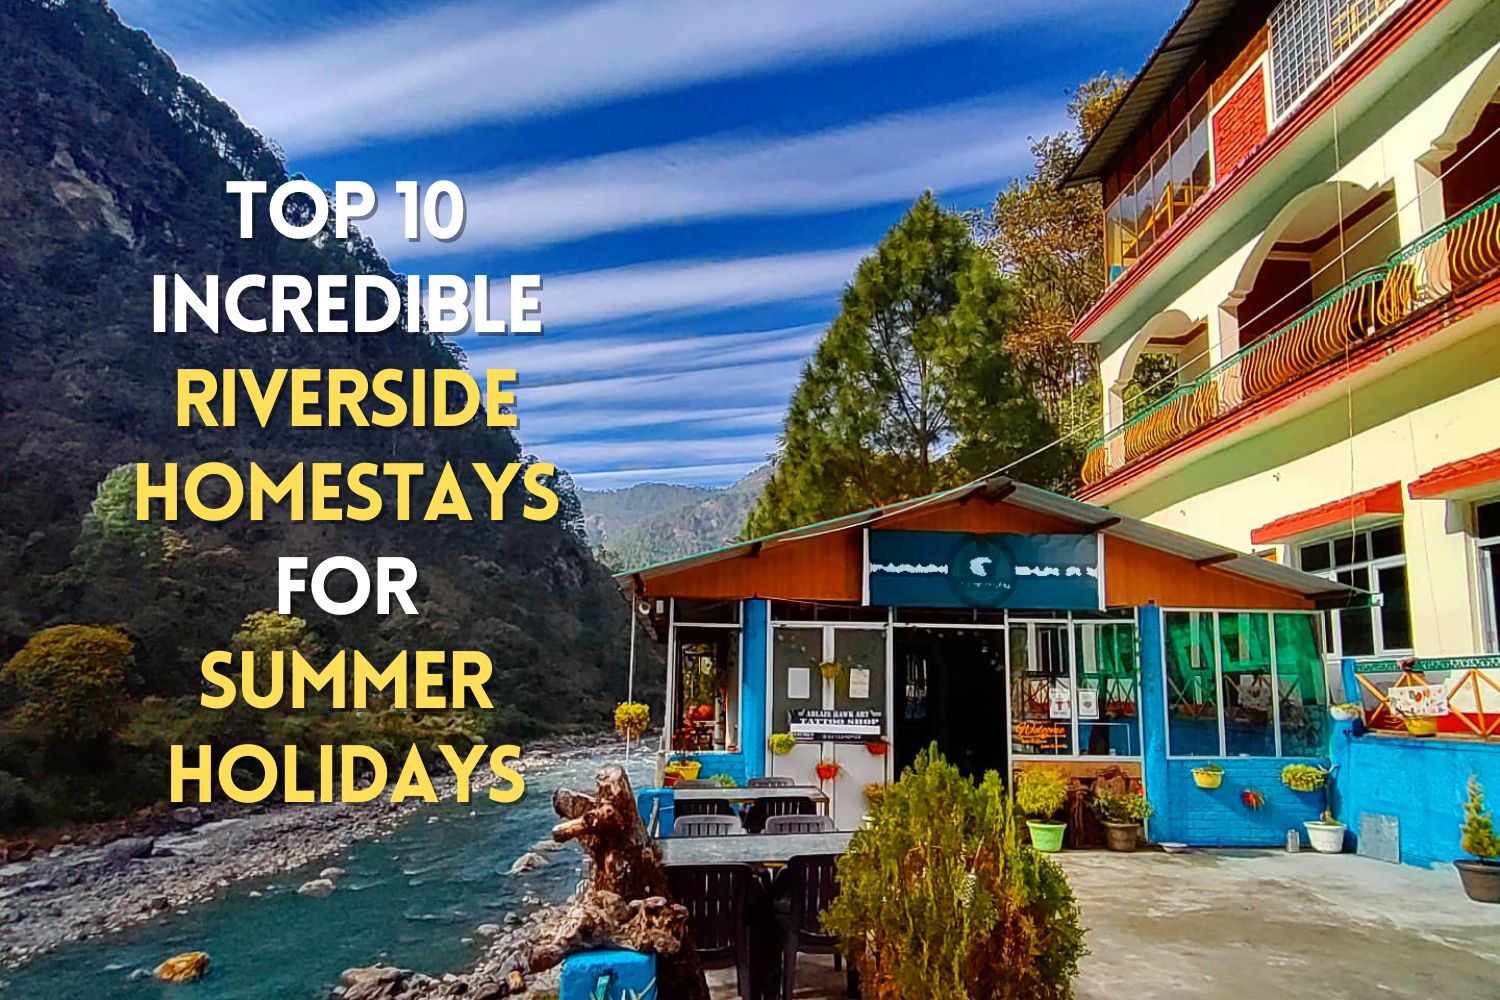 10 Incredible Riverside Homestays